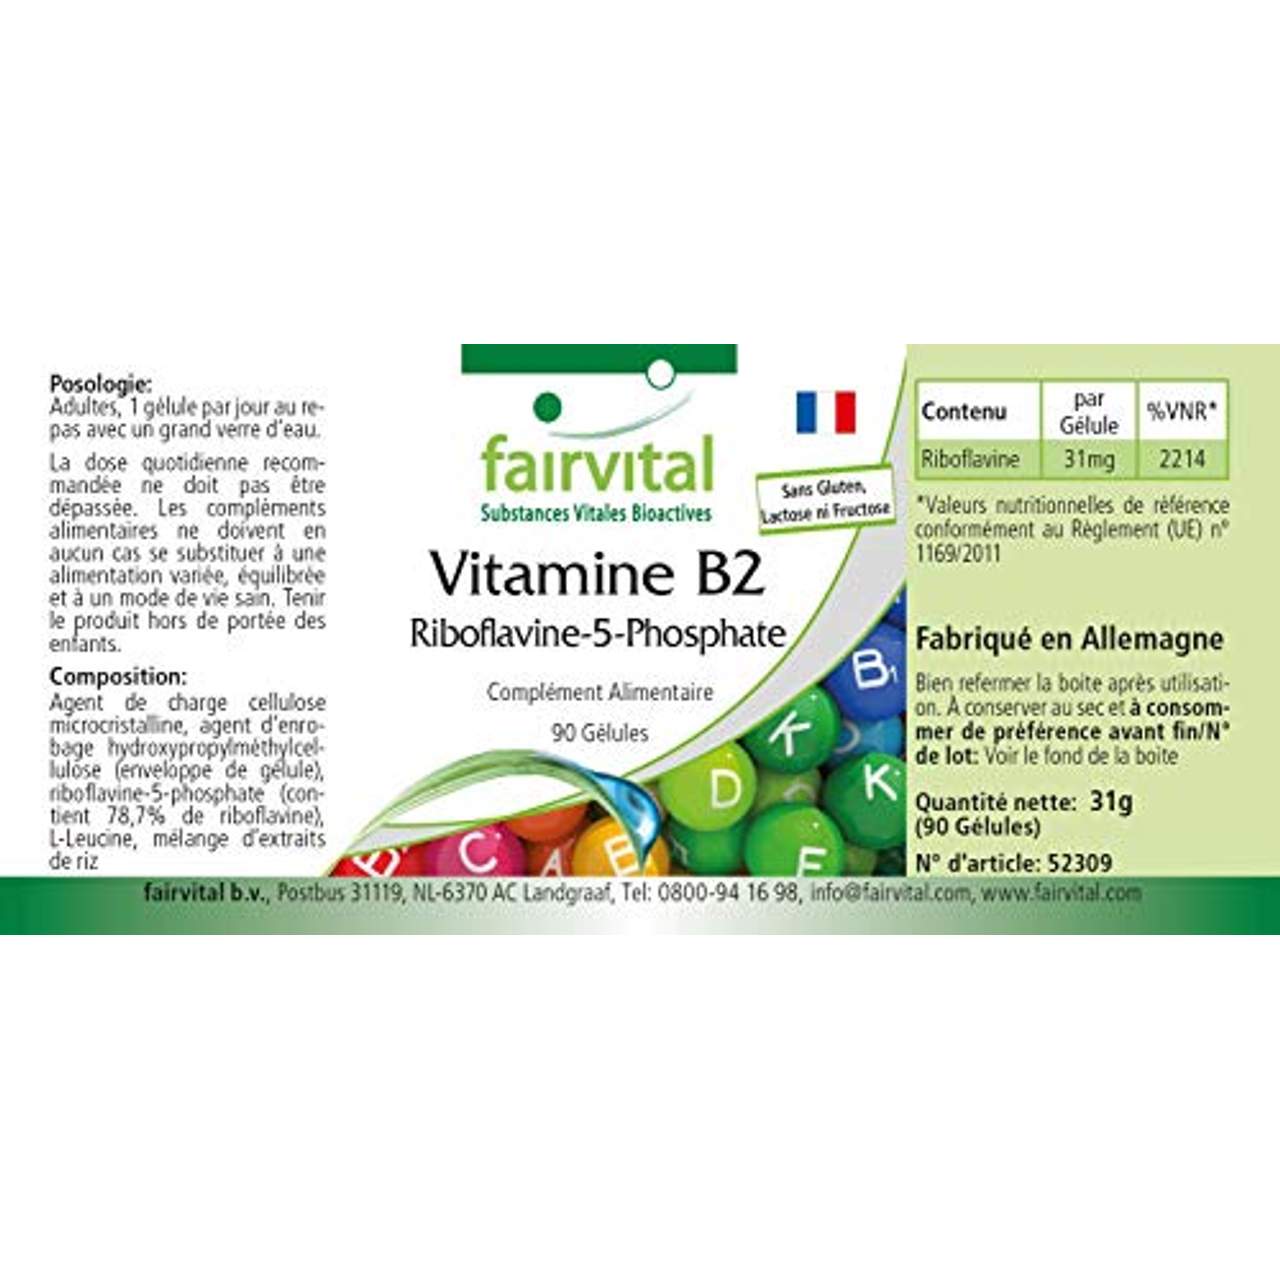 fairvital Riboflavin-5-Phosphat aktives Vitamin B2